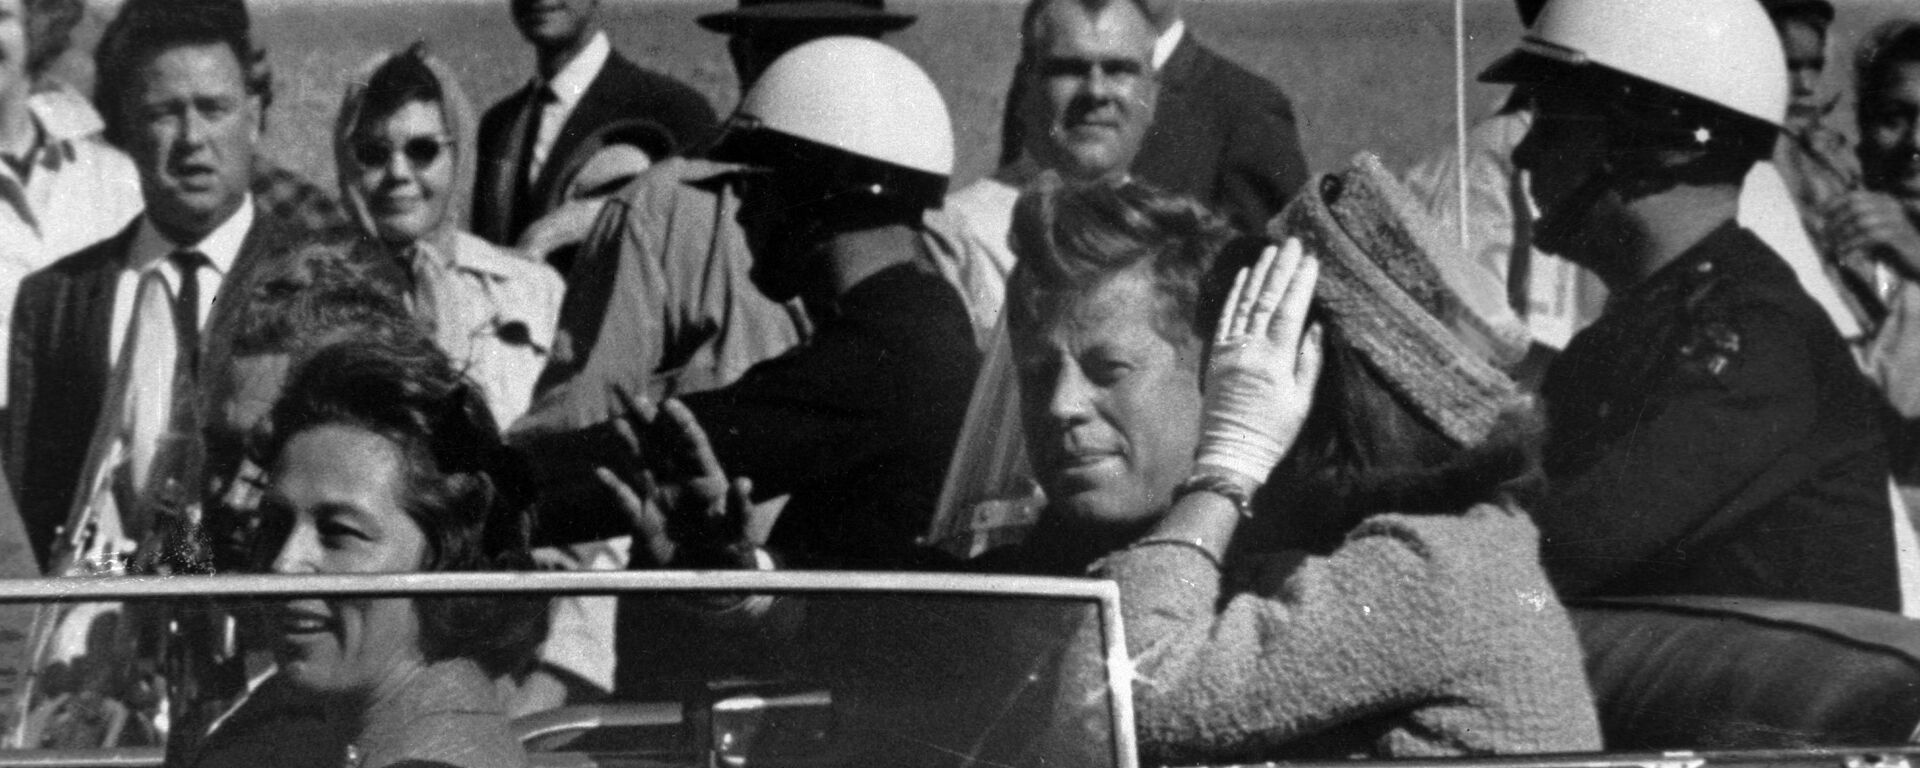 Председник САД Џон Кенеди у Даласу, 22. новембра 1963. минут пре убиства. - Sputnik Србија, 1920, 12.07.2021